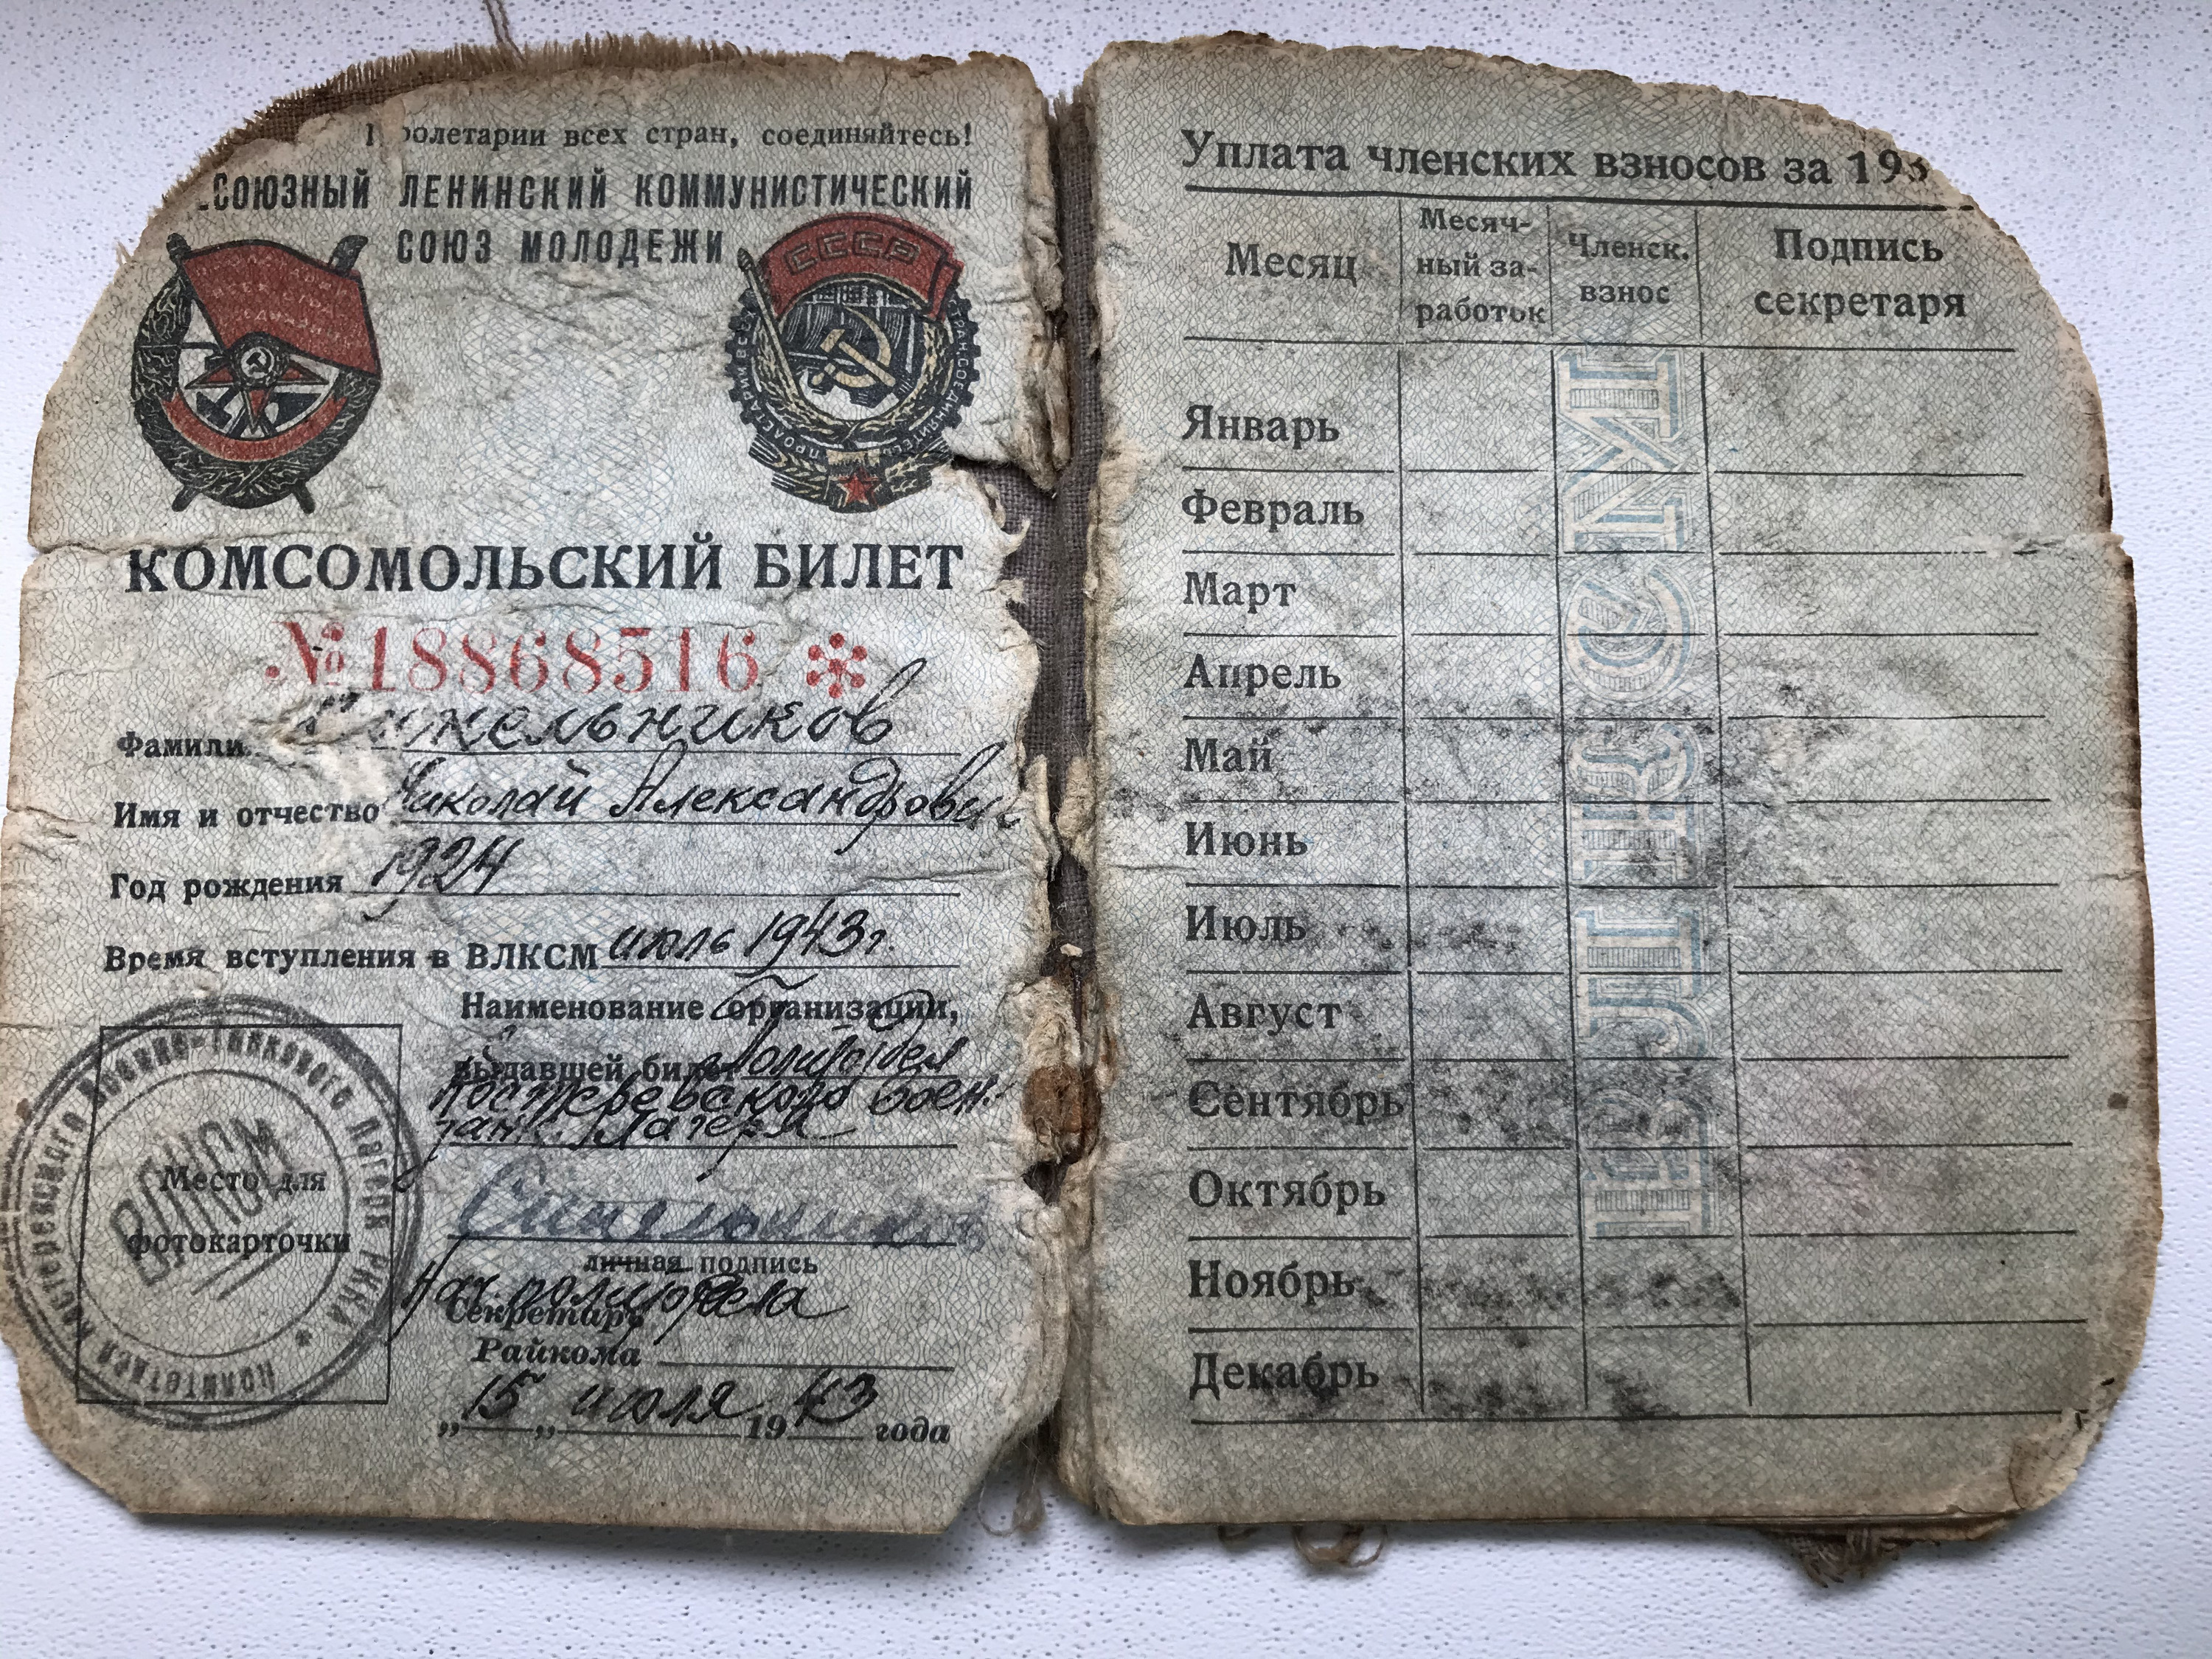 Косомольский билет Николая Синельникова обгорел вместе с одеждой, которая вспыхнула на нем, когда подбили танк, на броне которого он ехал